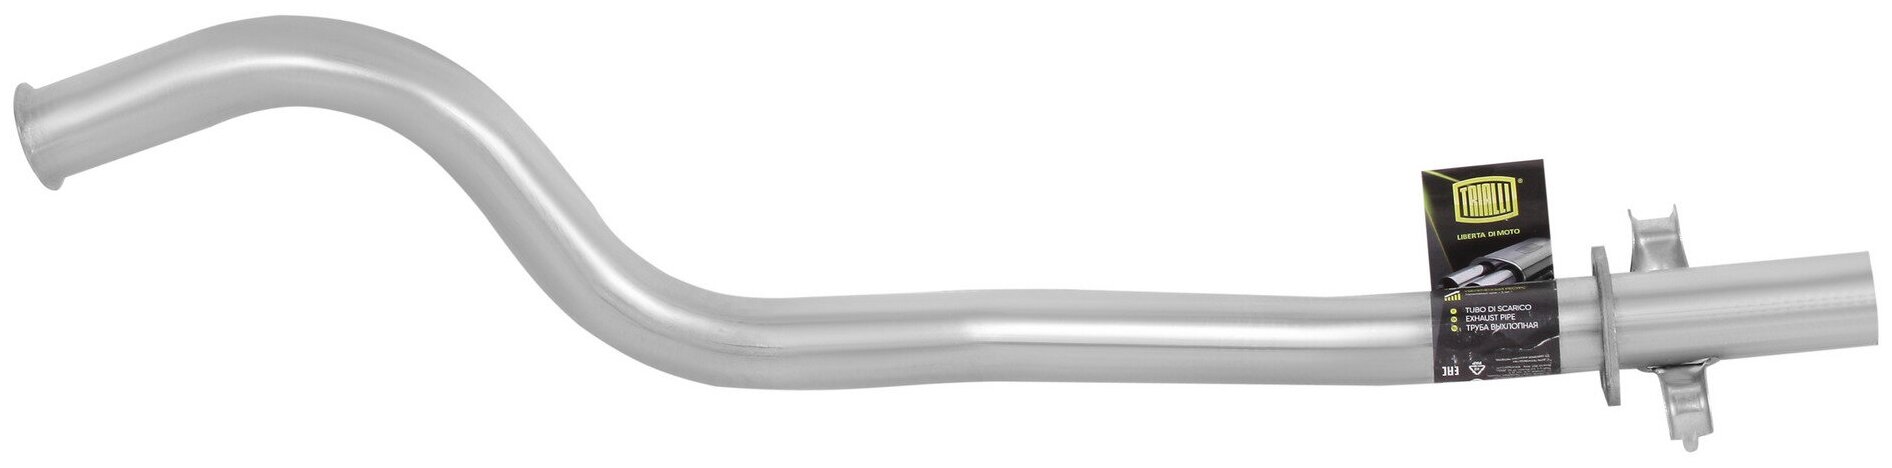 Труба выхлопная для автомобилей Лада 1111 ОКА нового образца (алюминизированная сталь) EMP 0112 TRIALLI